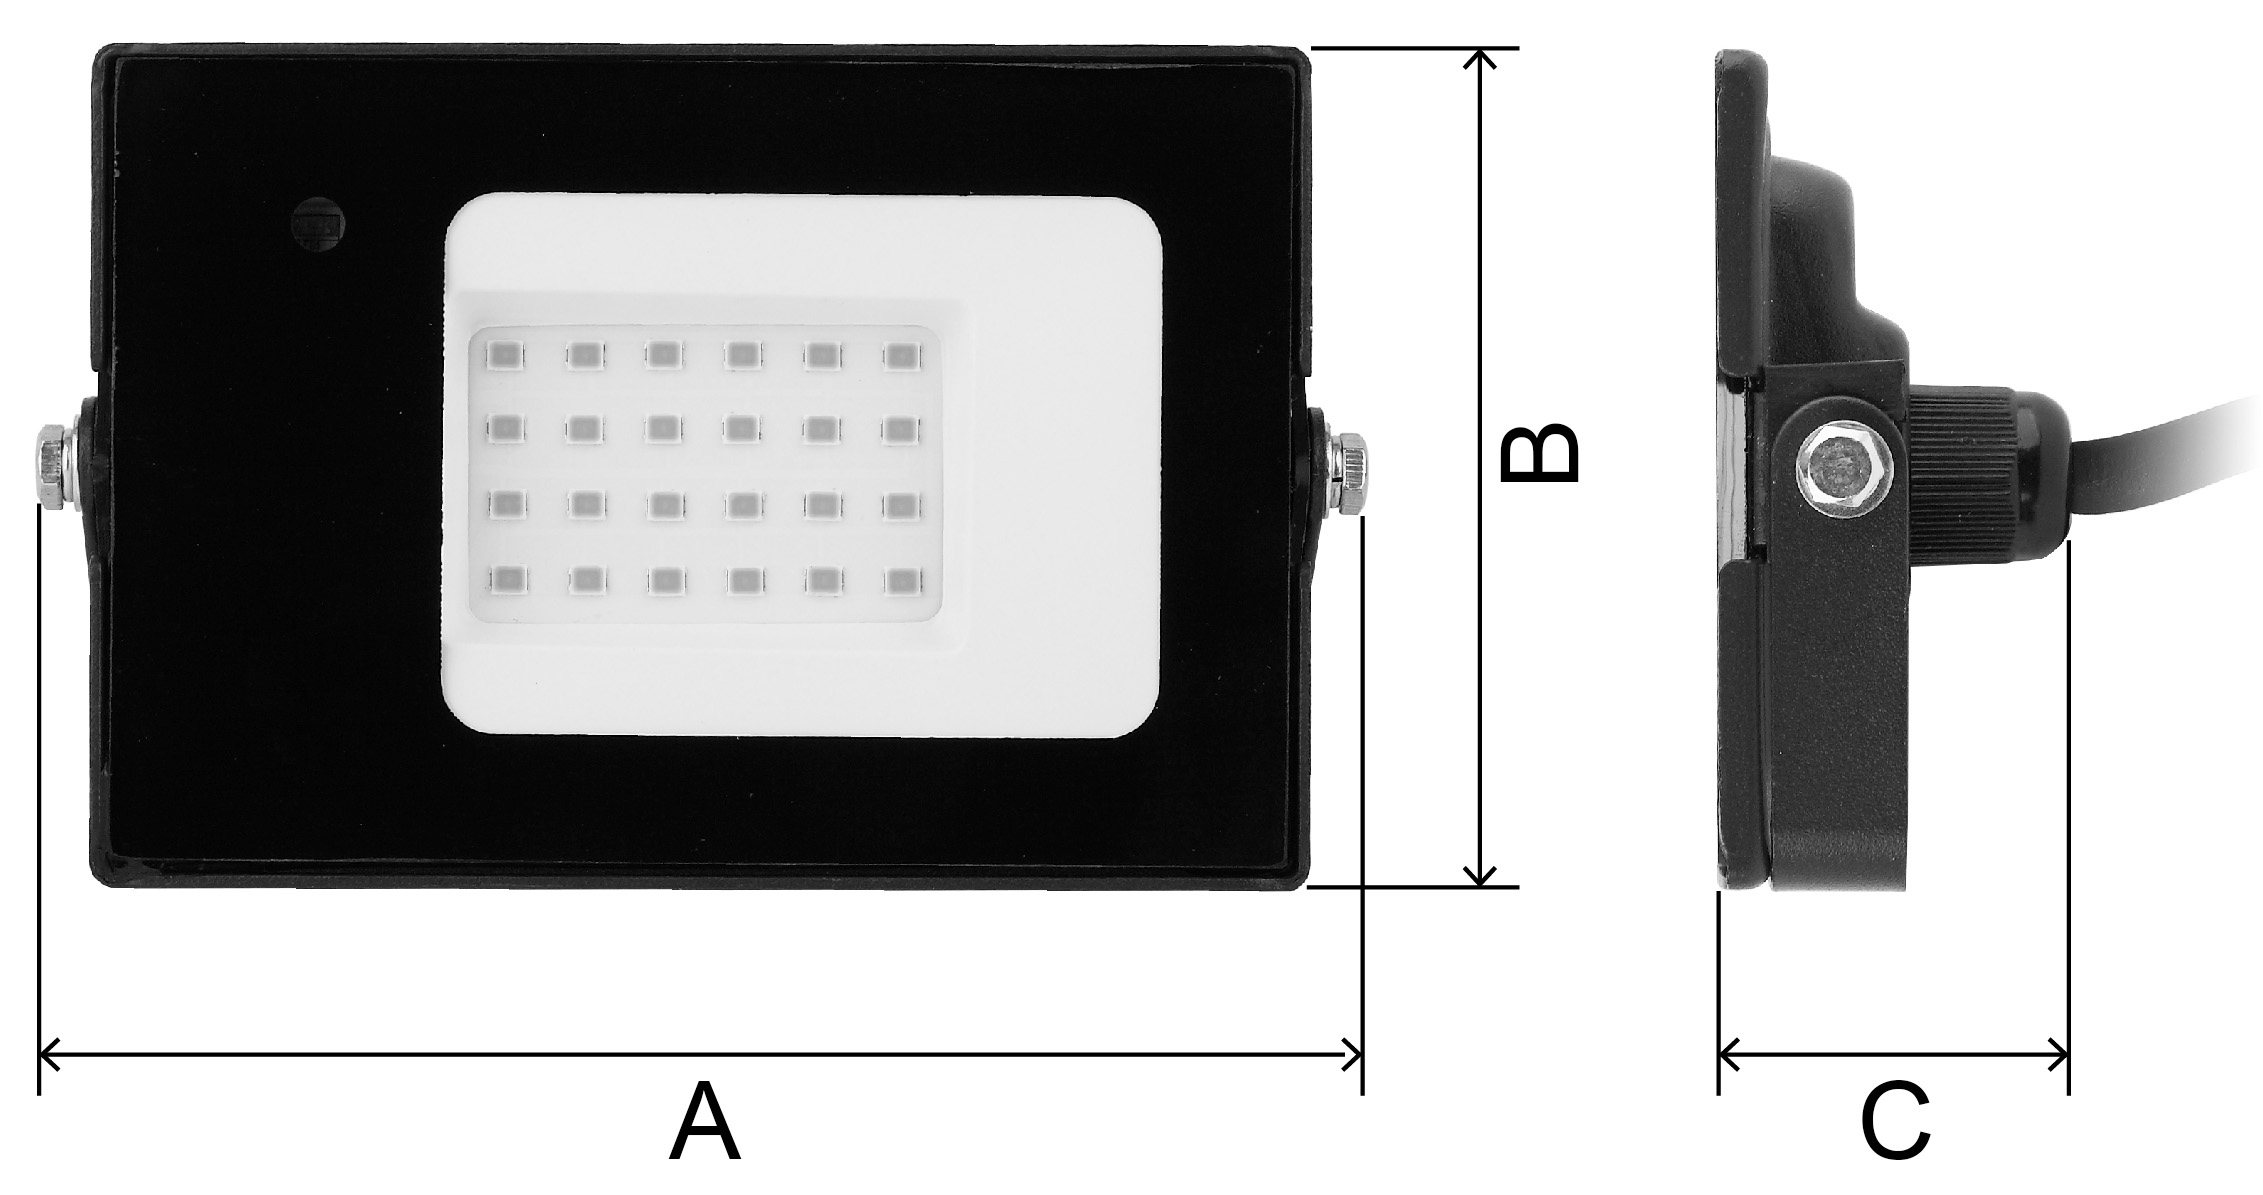 Прожектор светодиодный ЭРА LPR-041 20 Вт с датчиком движения, цветовая температура 6500 К, световой поток 1400 Лм, IP65, форма – прямоугольник, цвет - черный